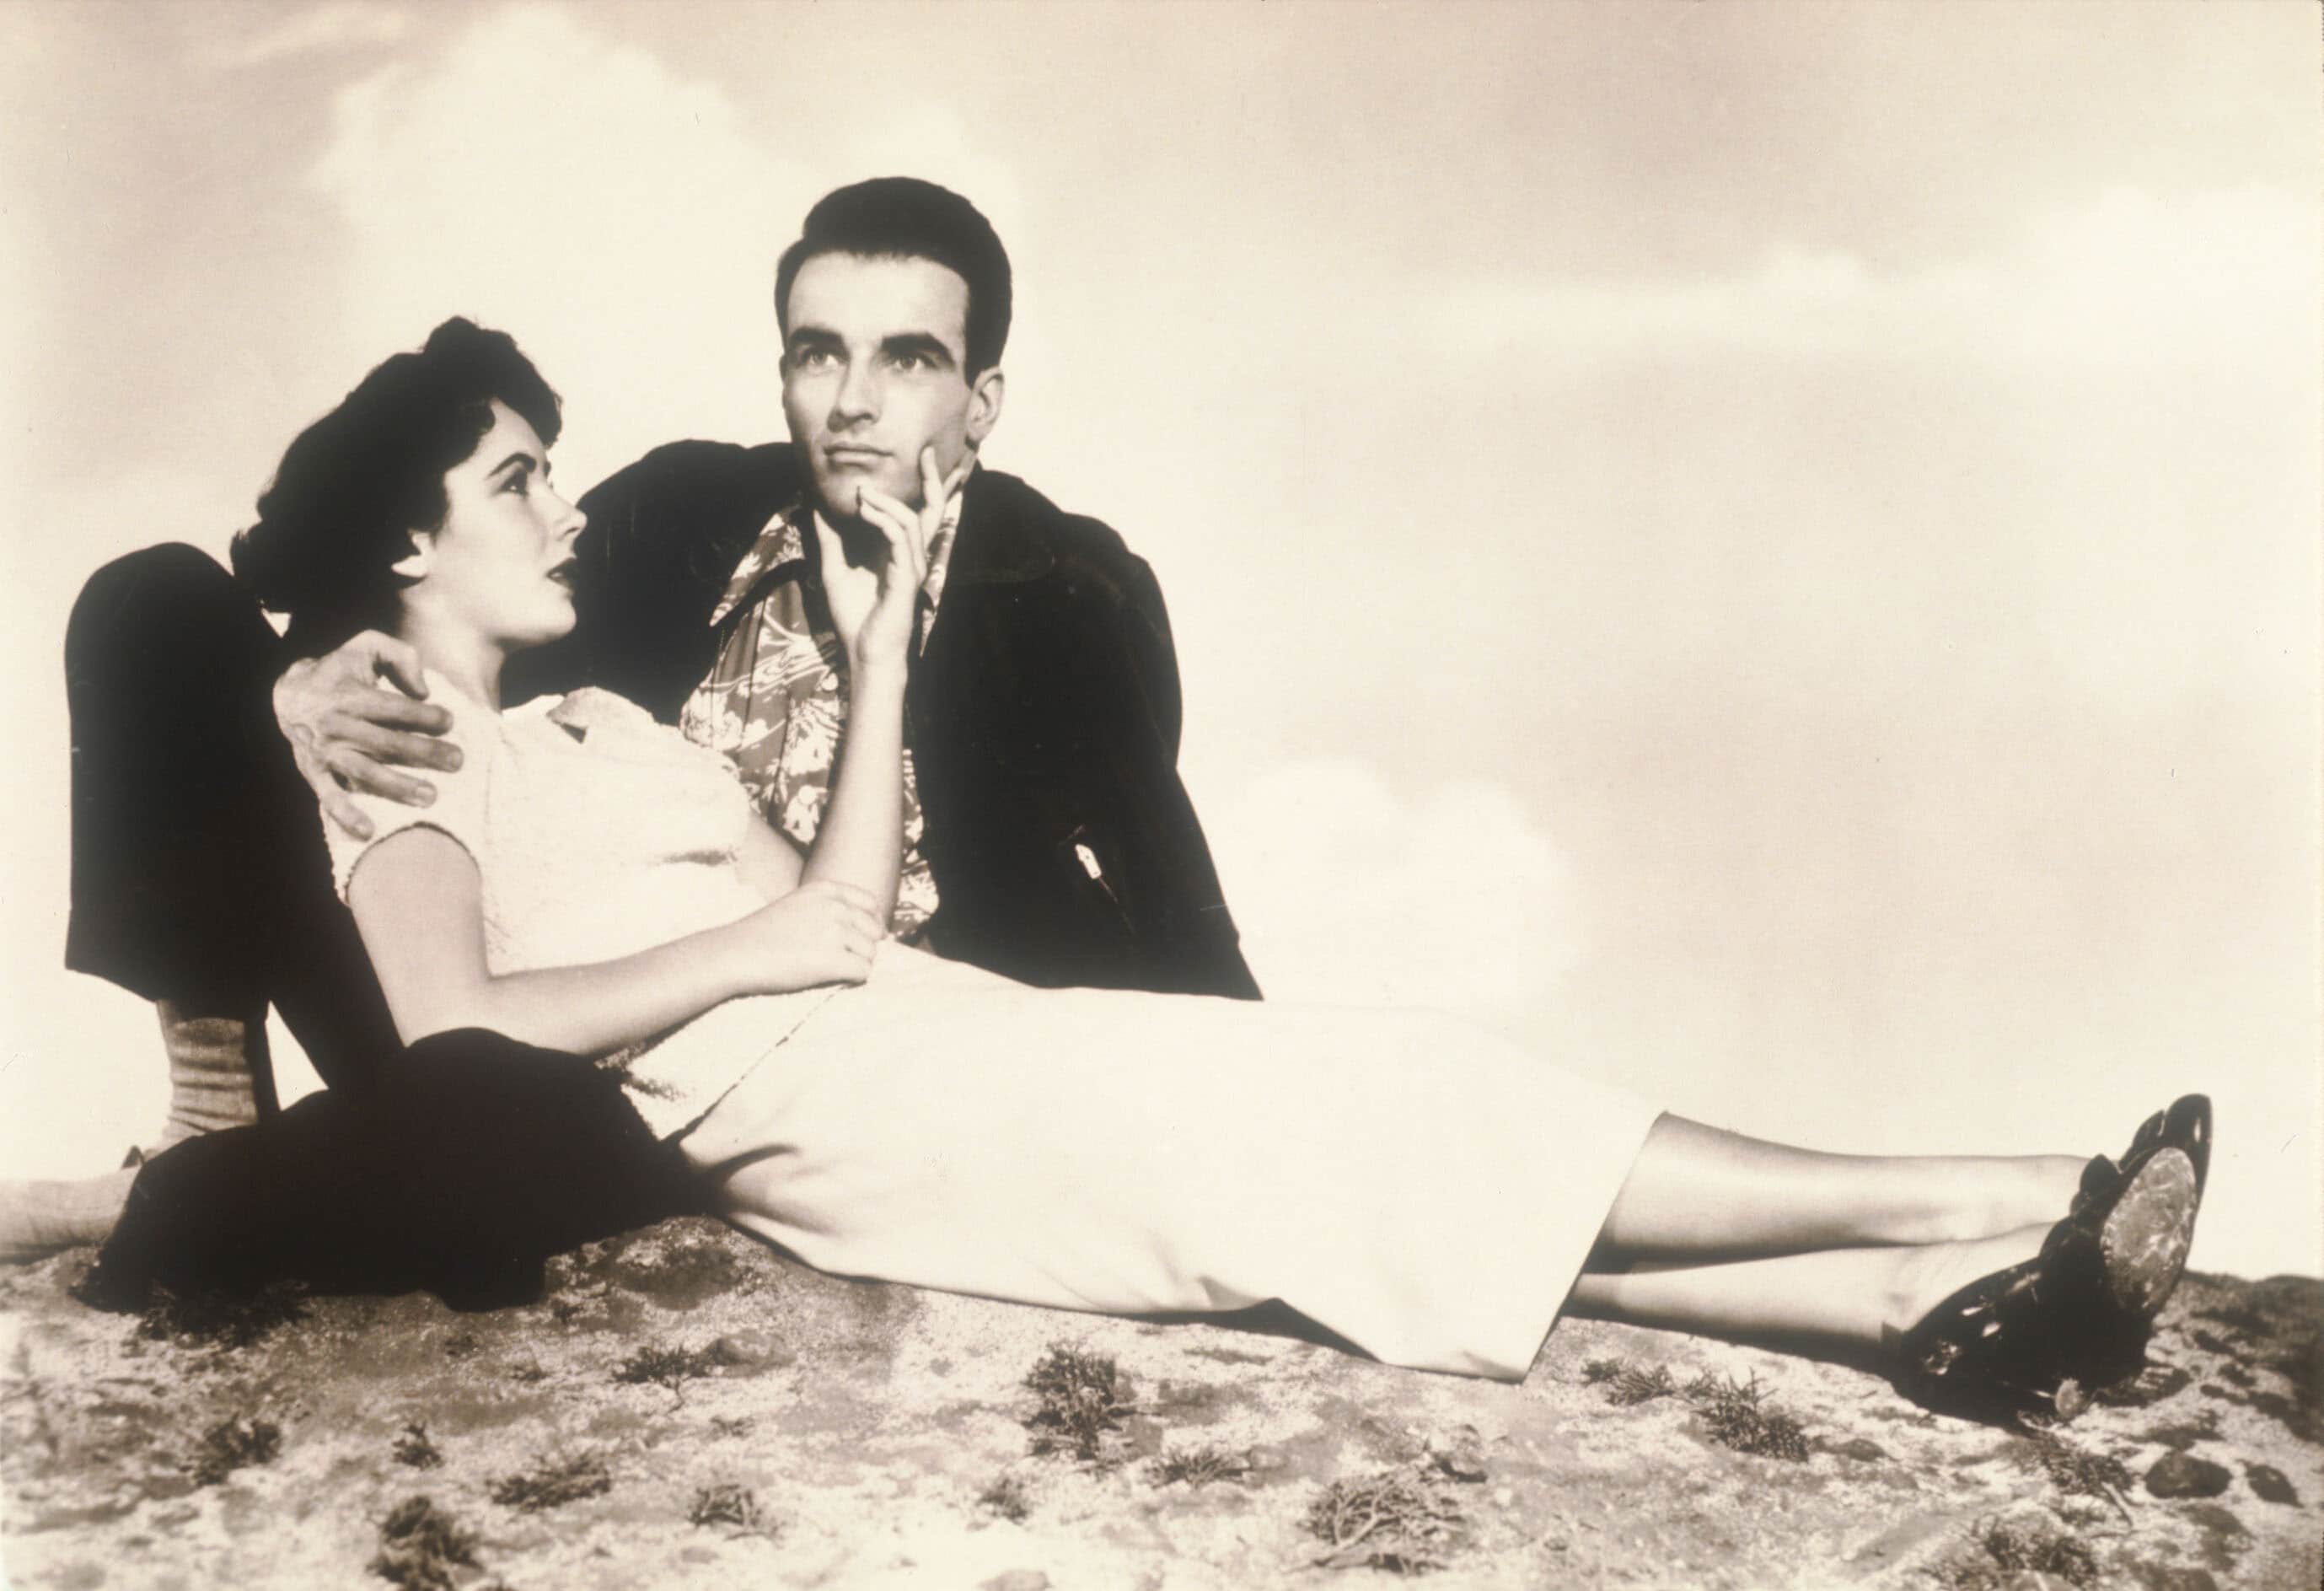 Una scena del film "Un posto al sole" del 1951. Liz e Montgomery Clift